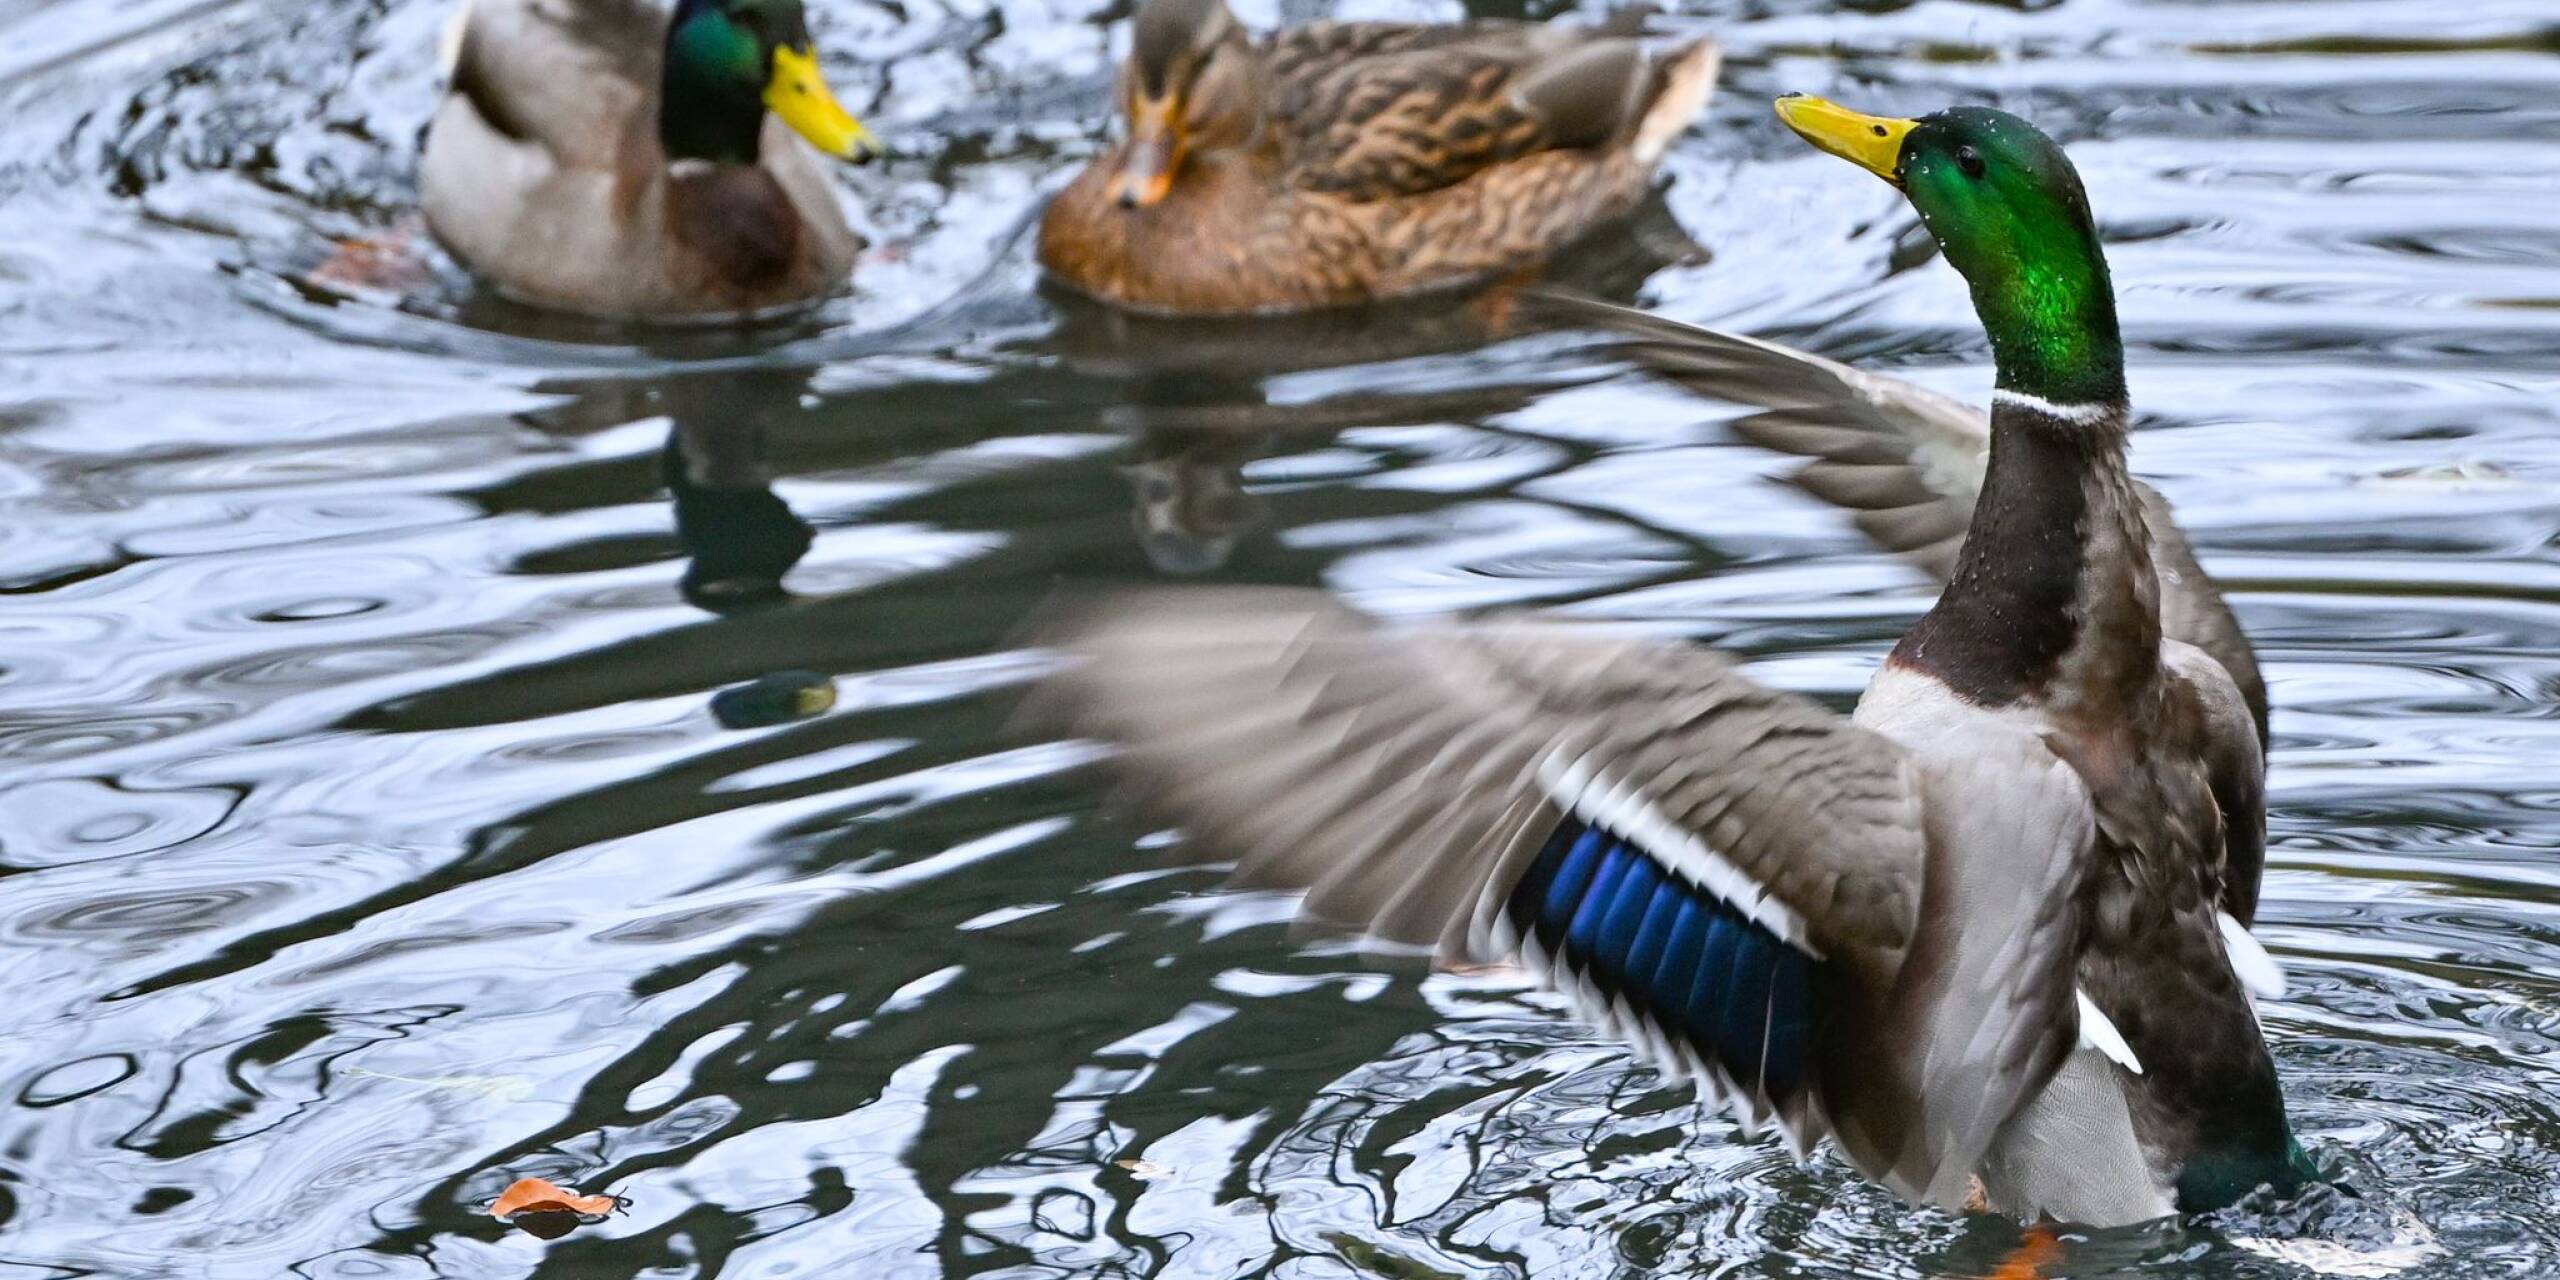 Eine Stockente und ein Stockentenerpel schwimmen auf einem See in Eberswalde, während ein zweiter Erpel mit seinen Flügeln flatternd um Aufmerksamkeit buhlt.